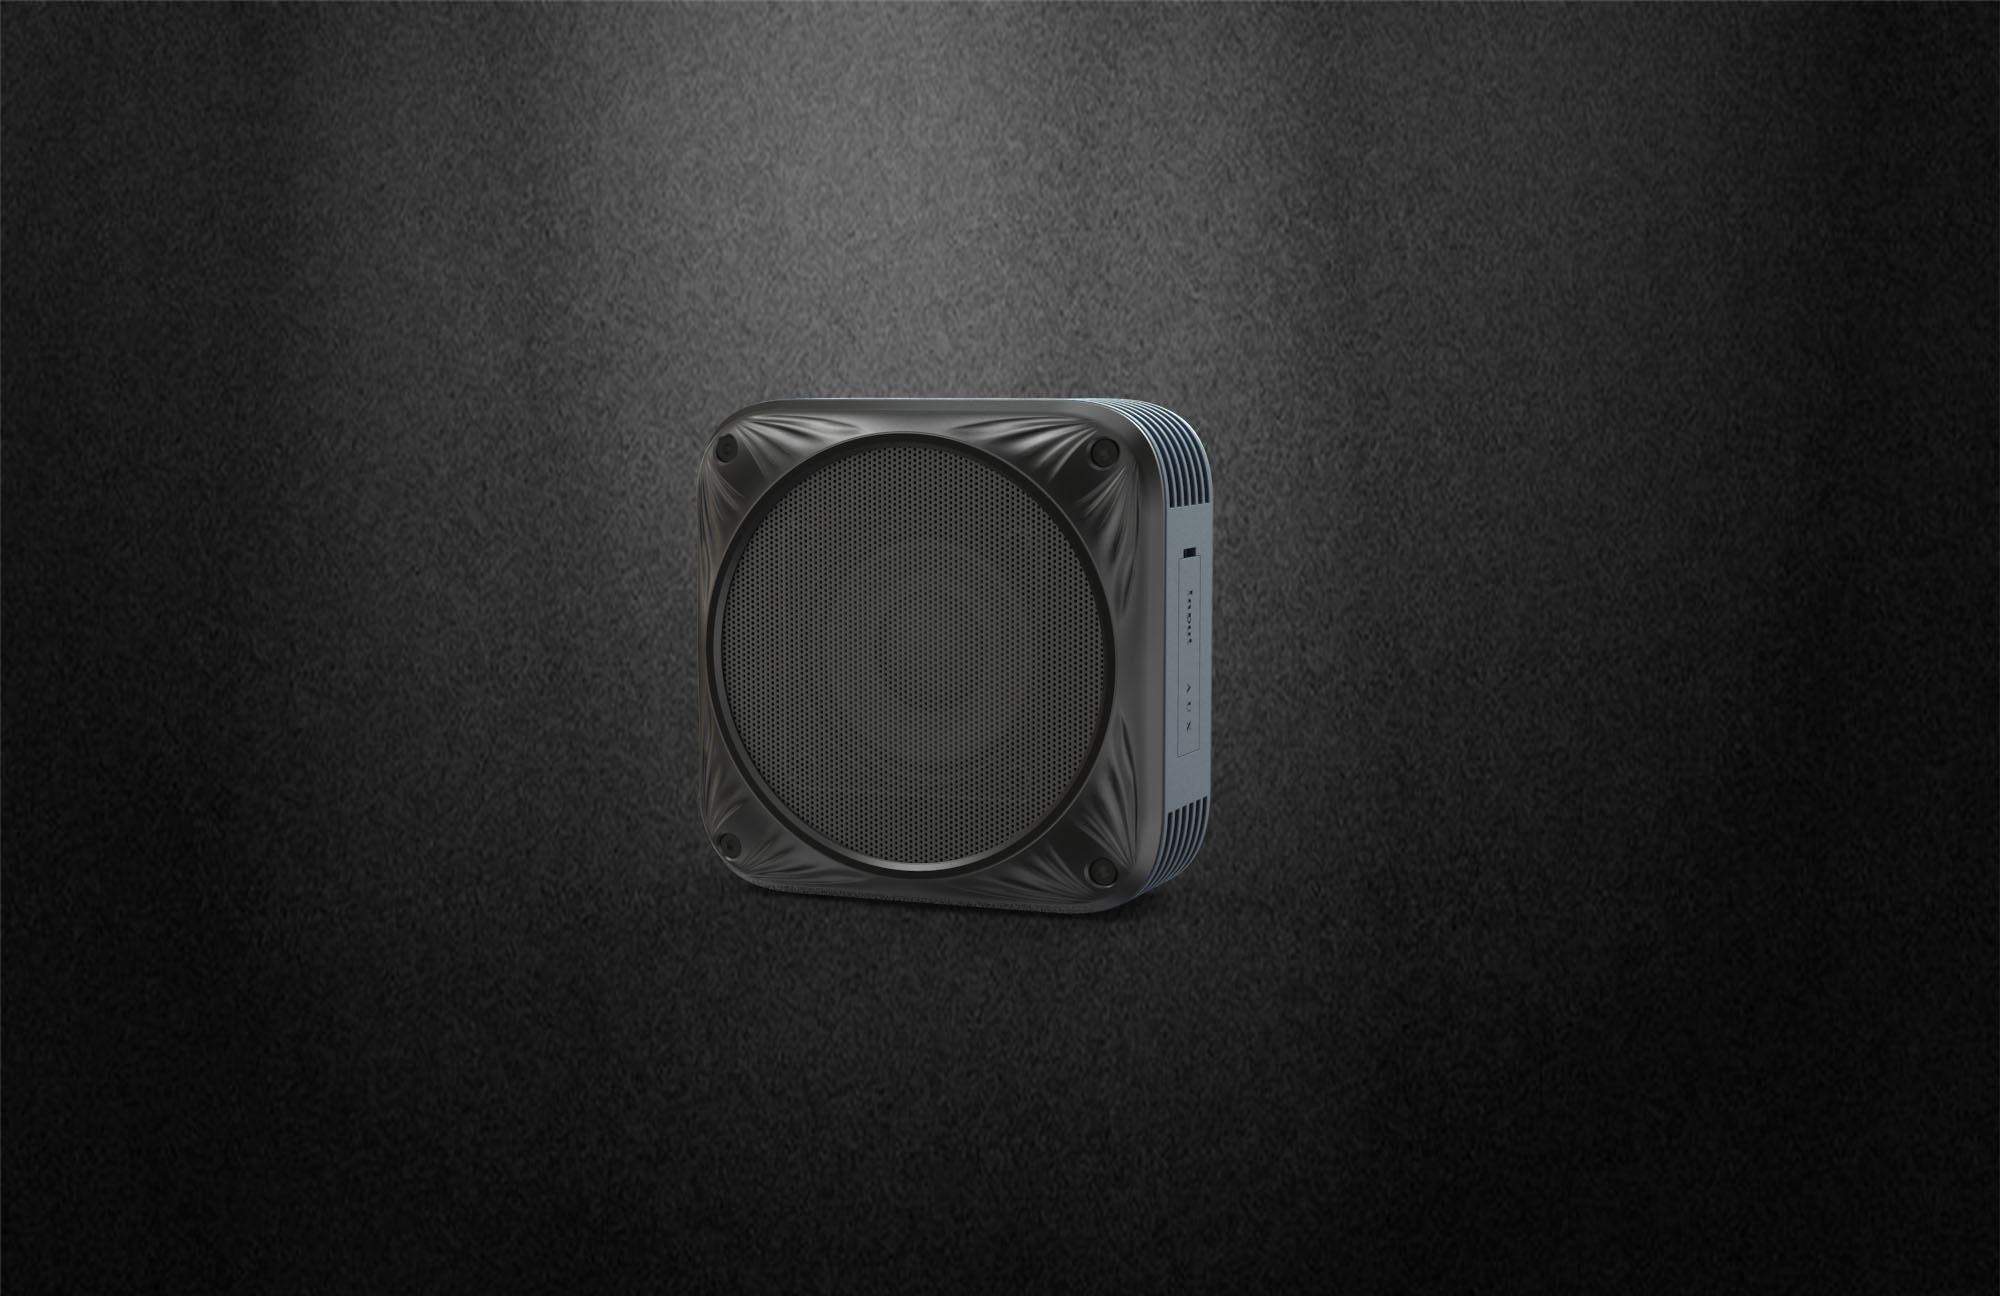 Waterproof dustproof shockproof updated bluetooth speaker